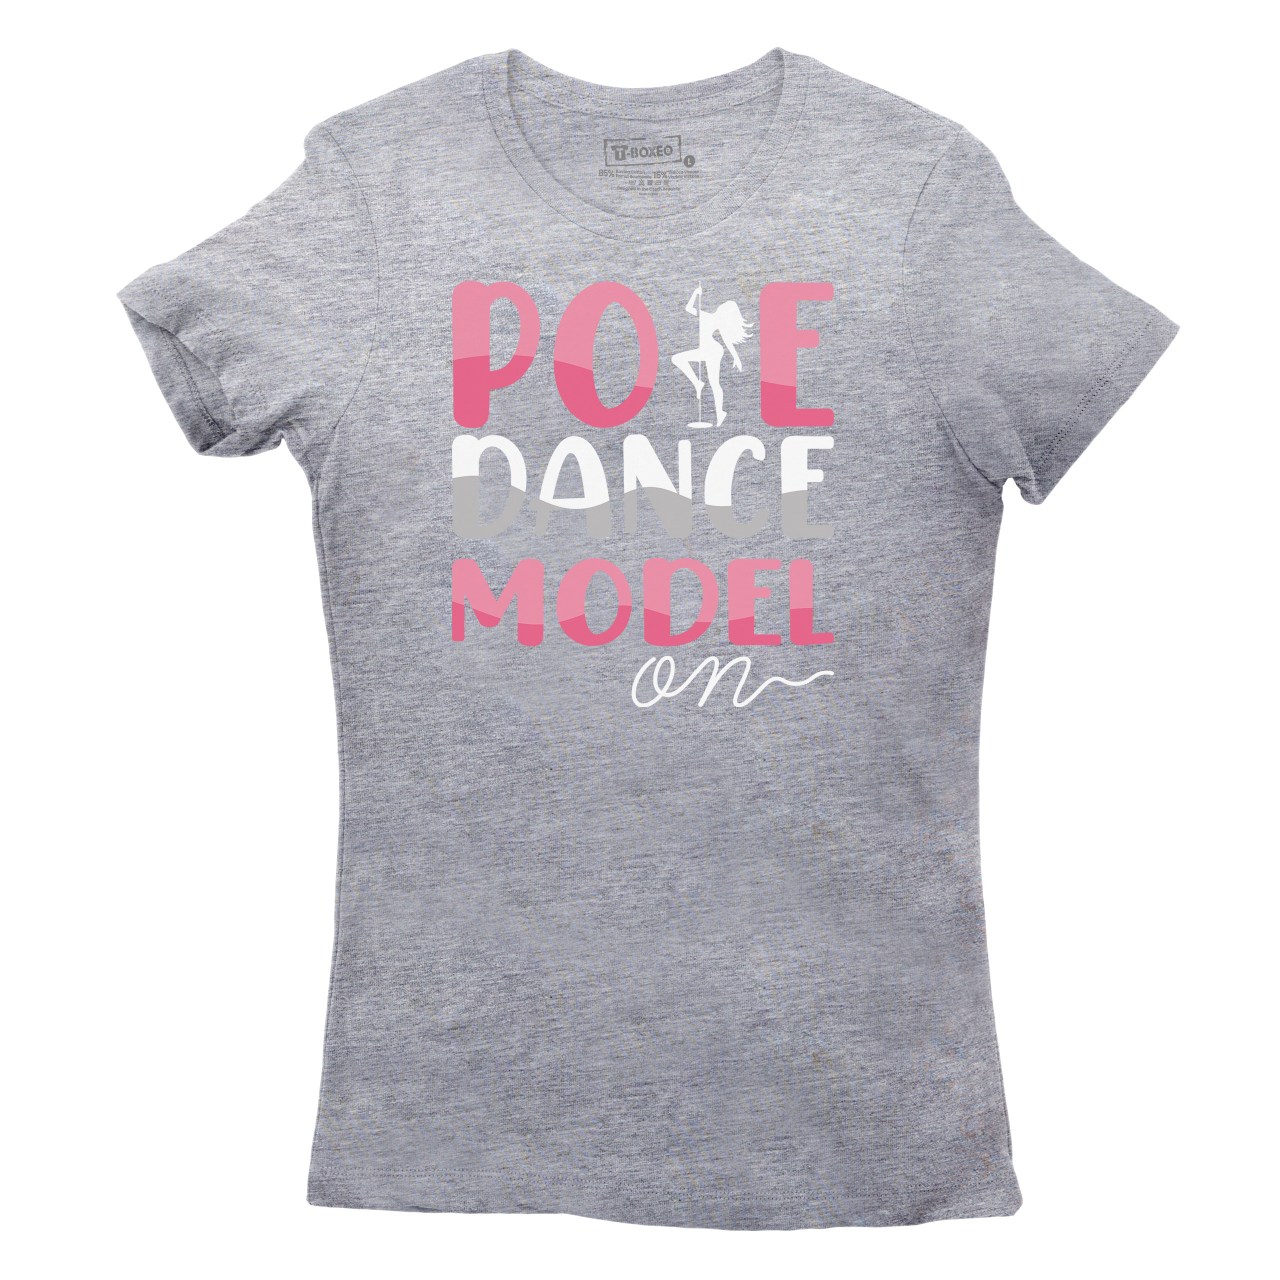 Dámské tričko s potiskem “Pole Dance Model”